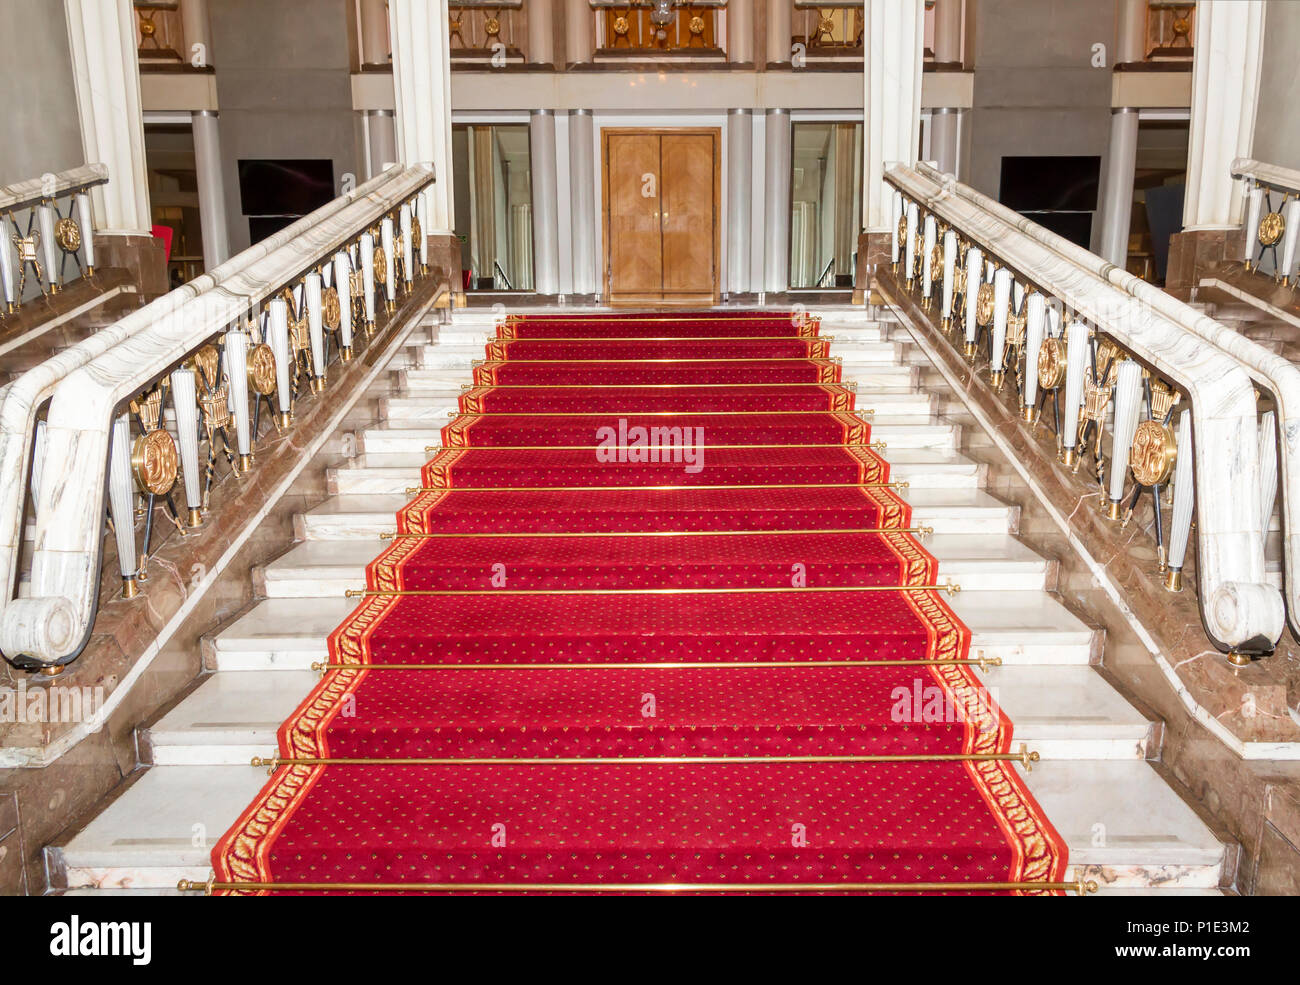 Escalier dans le palais polonais. Château Royal de Varsovie.tapis rouge. Banque D'Images